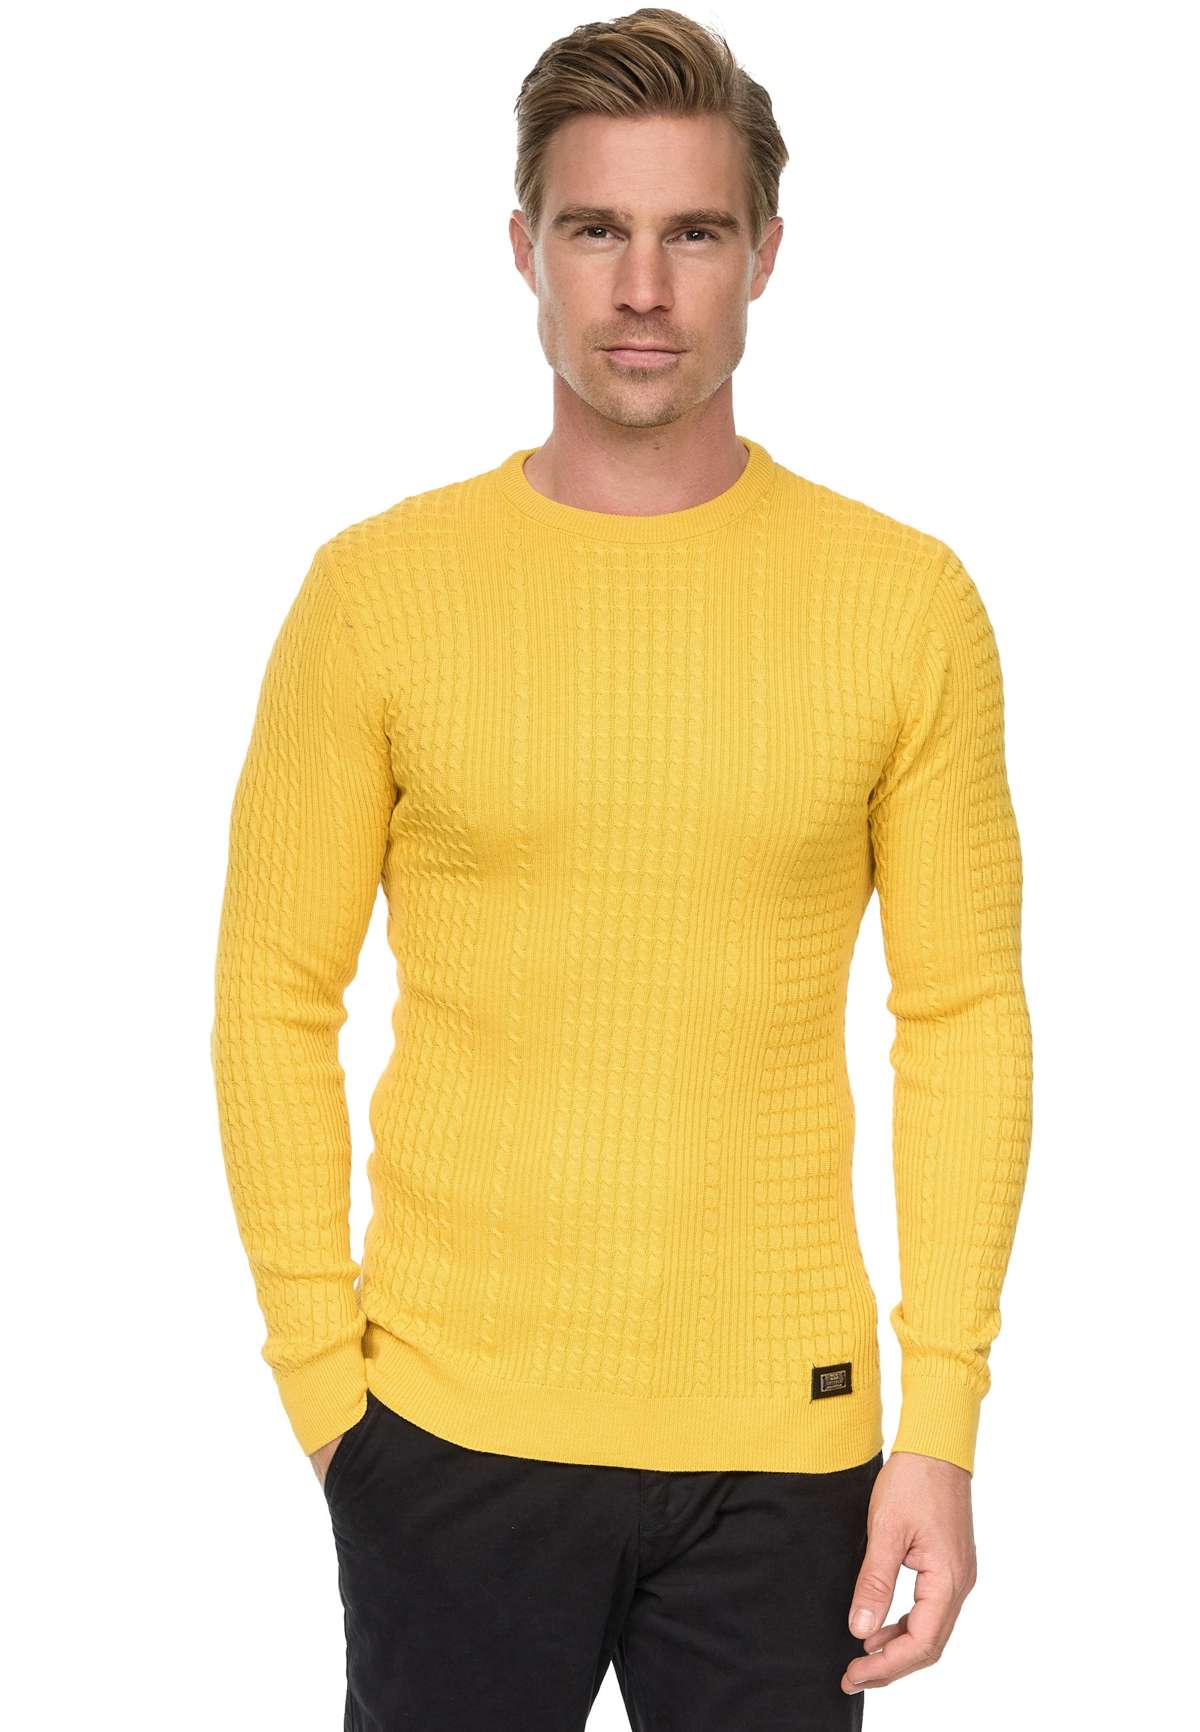 Вязаный свитер с современным узором спицами.